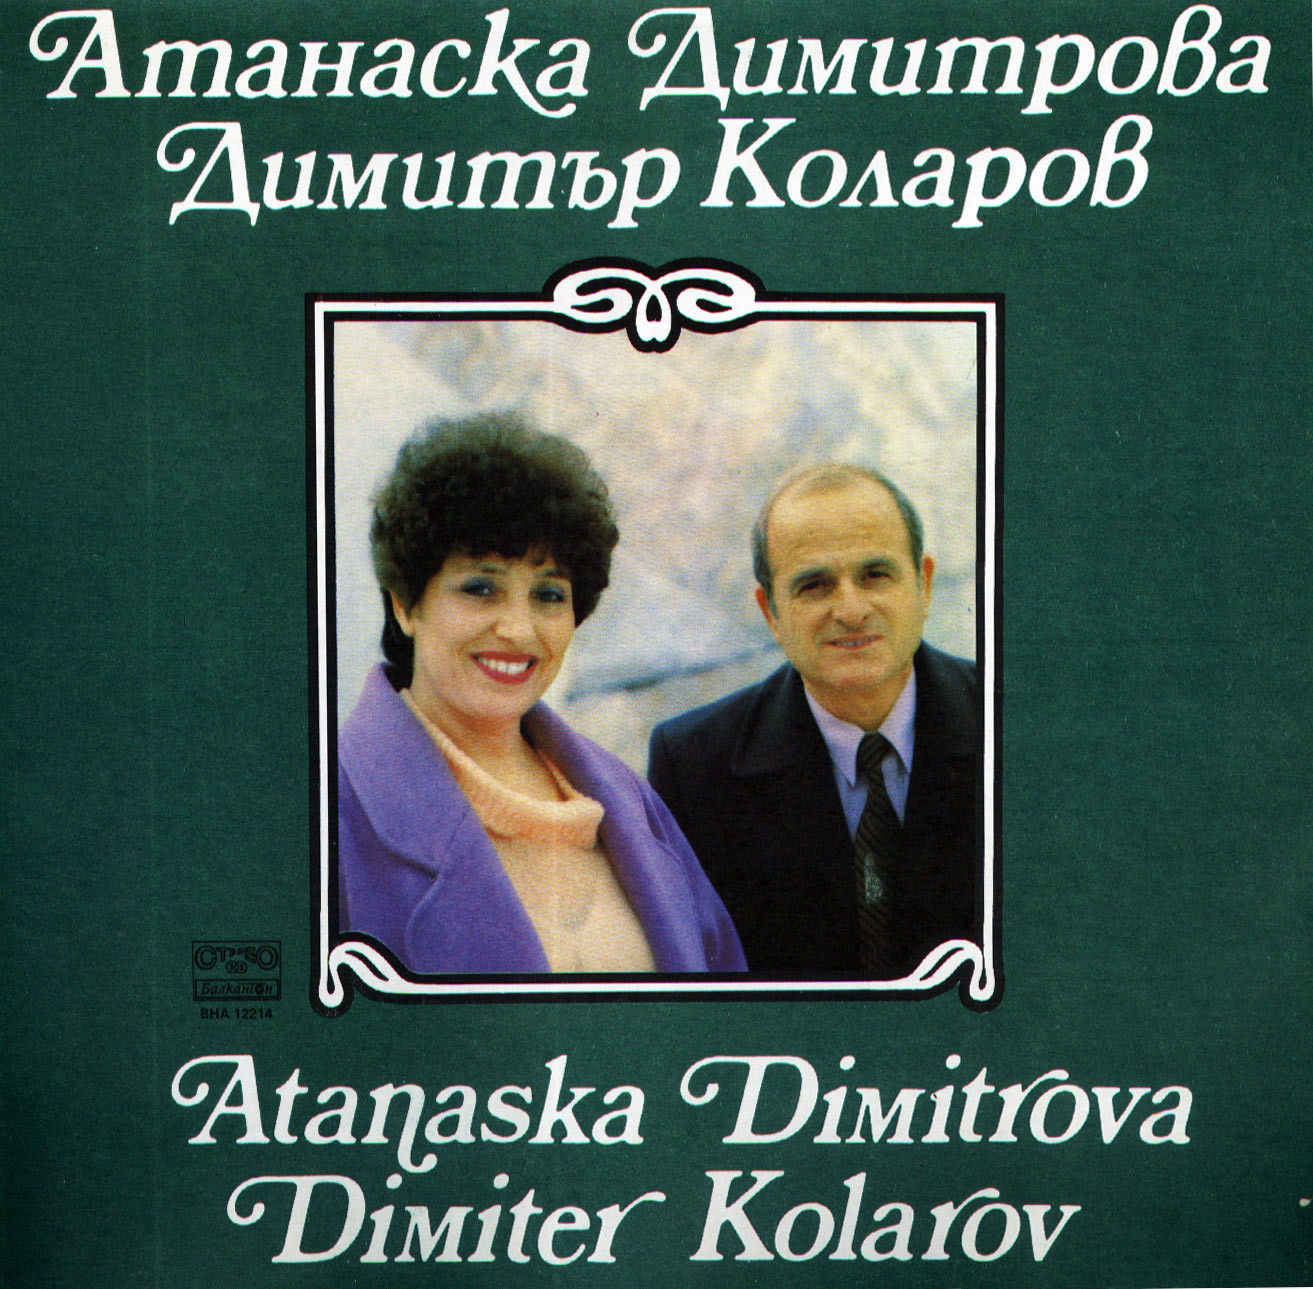 Атанаска Димитрова и Димитър Коларов